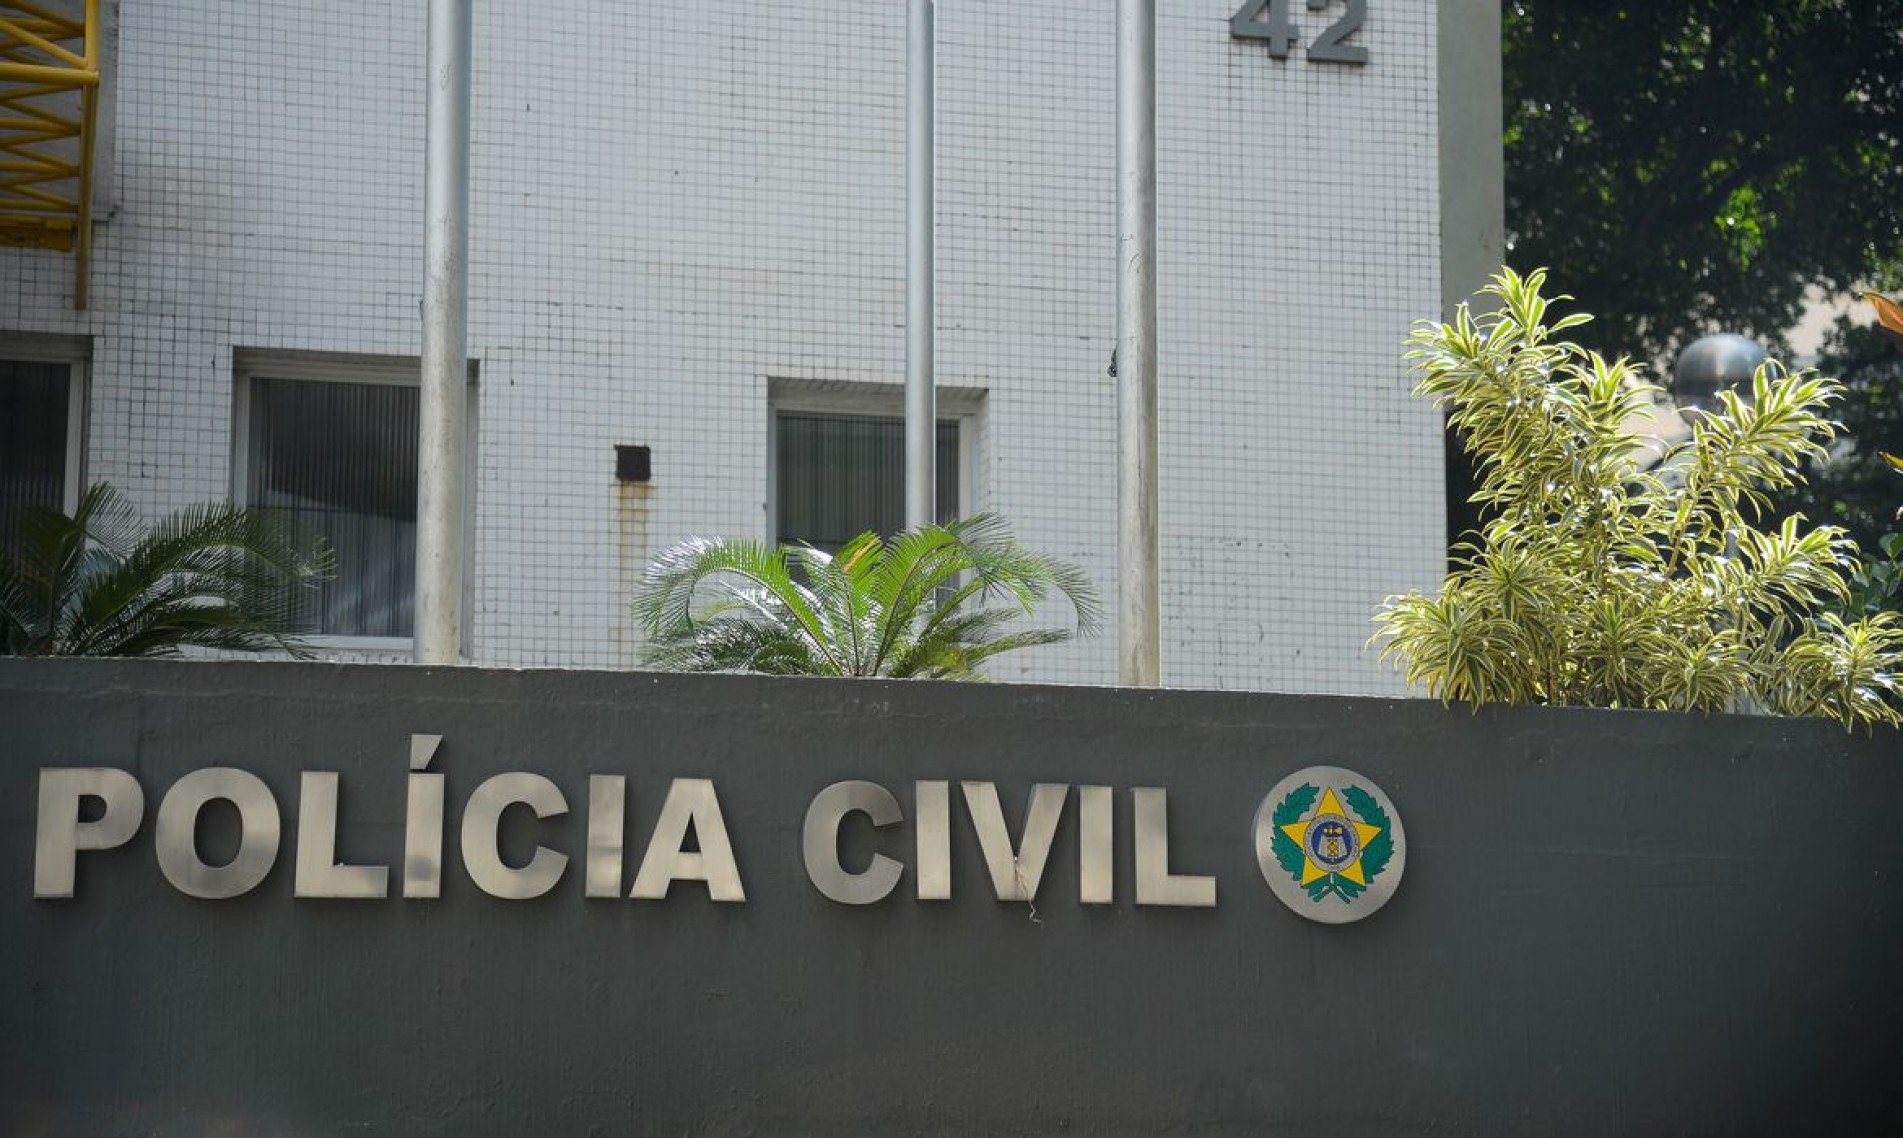  Fachada da Secretaria de Estado da Polícia Civil do Rio de Janeiro